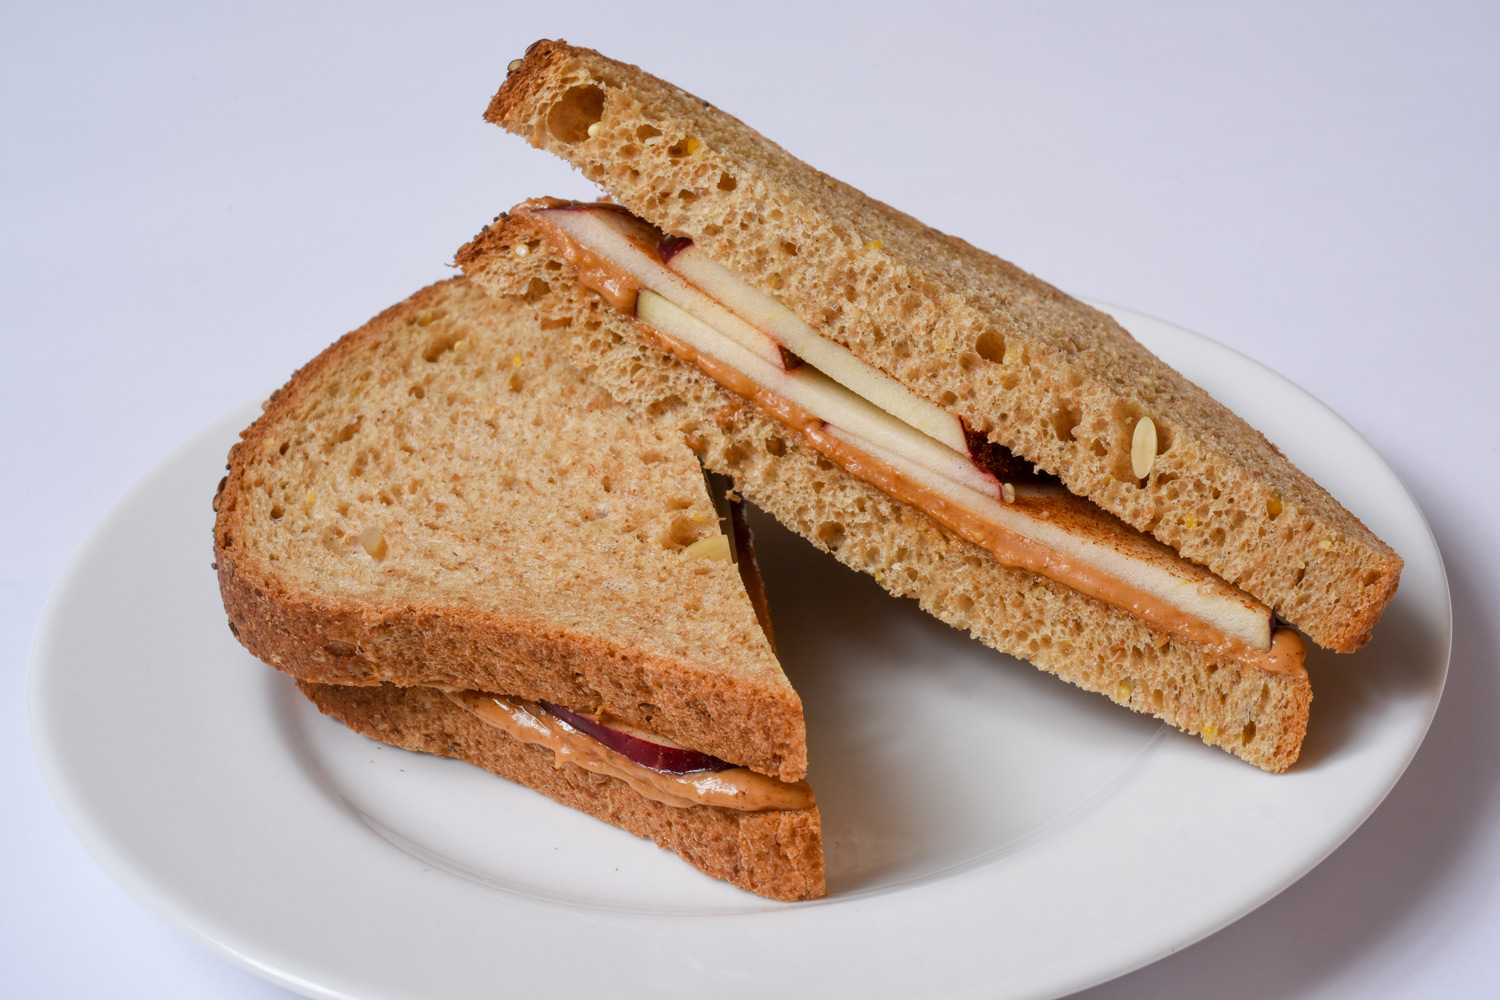 Peanut Butter and Apple Slices Sandwich - Med Instead of Meds